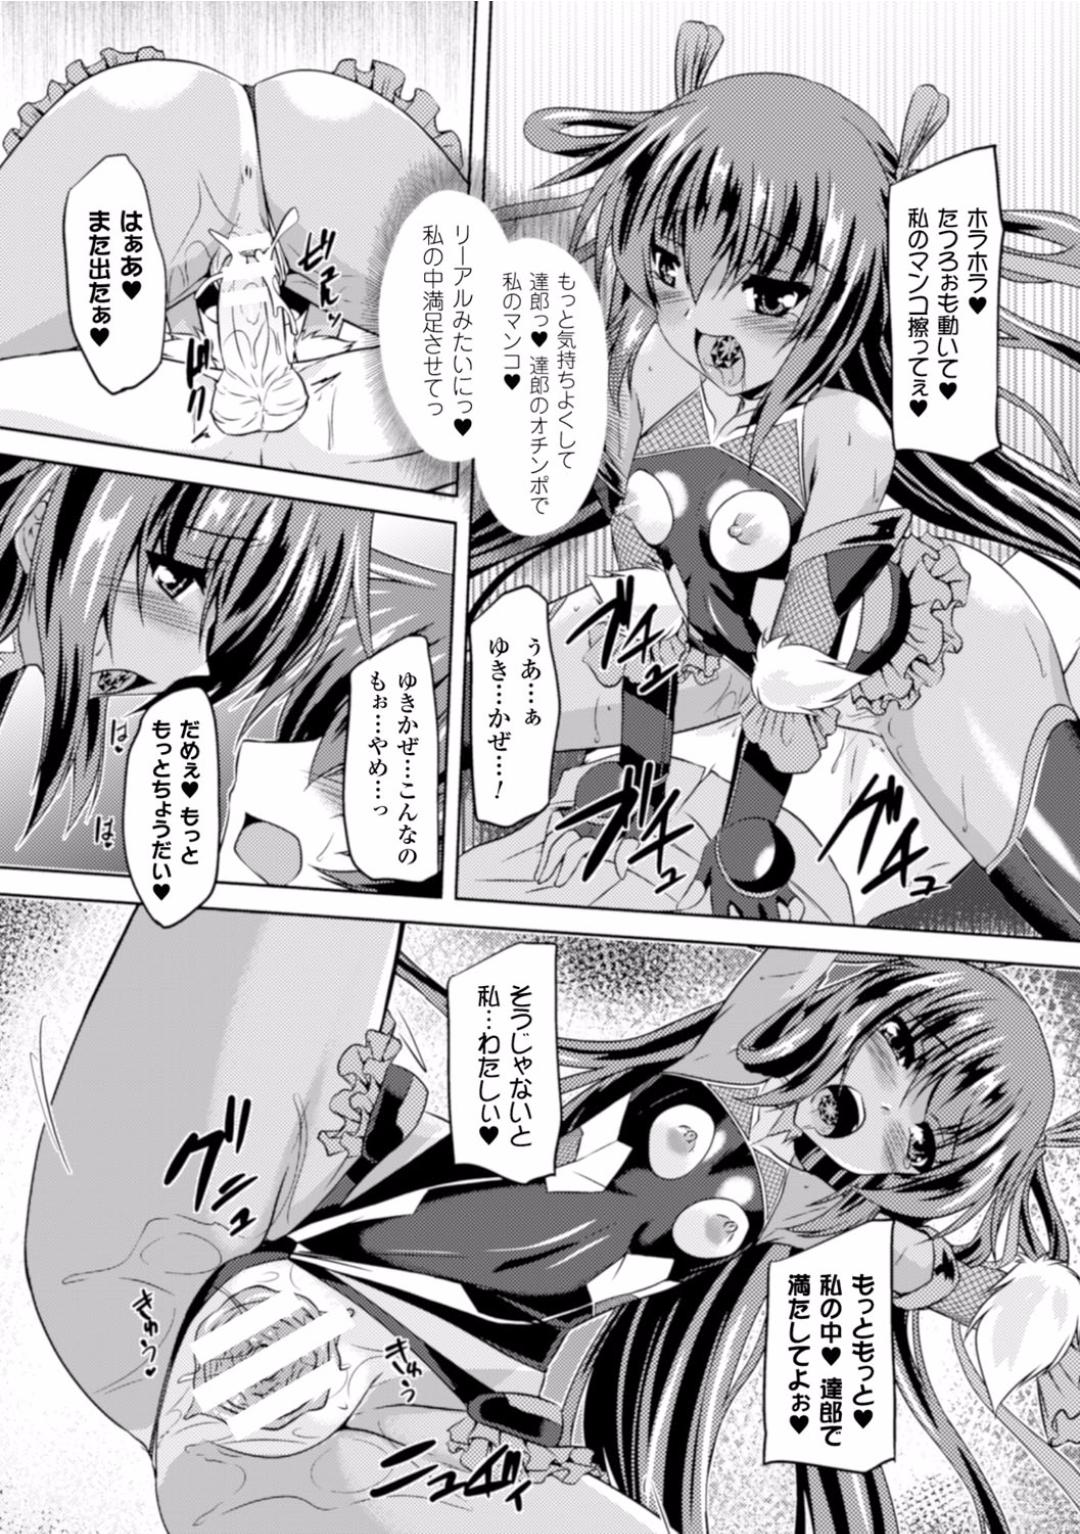 Seigi no Heroine Kangoku File Vol. 2 11